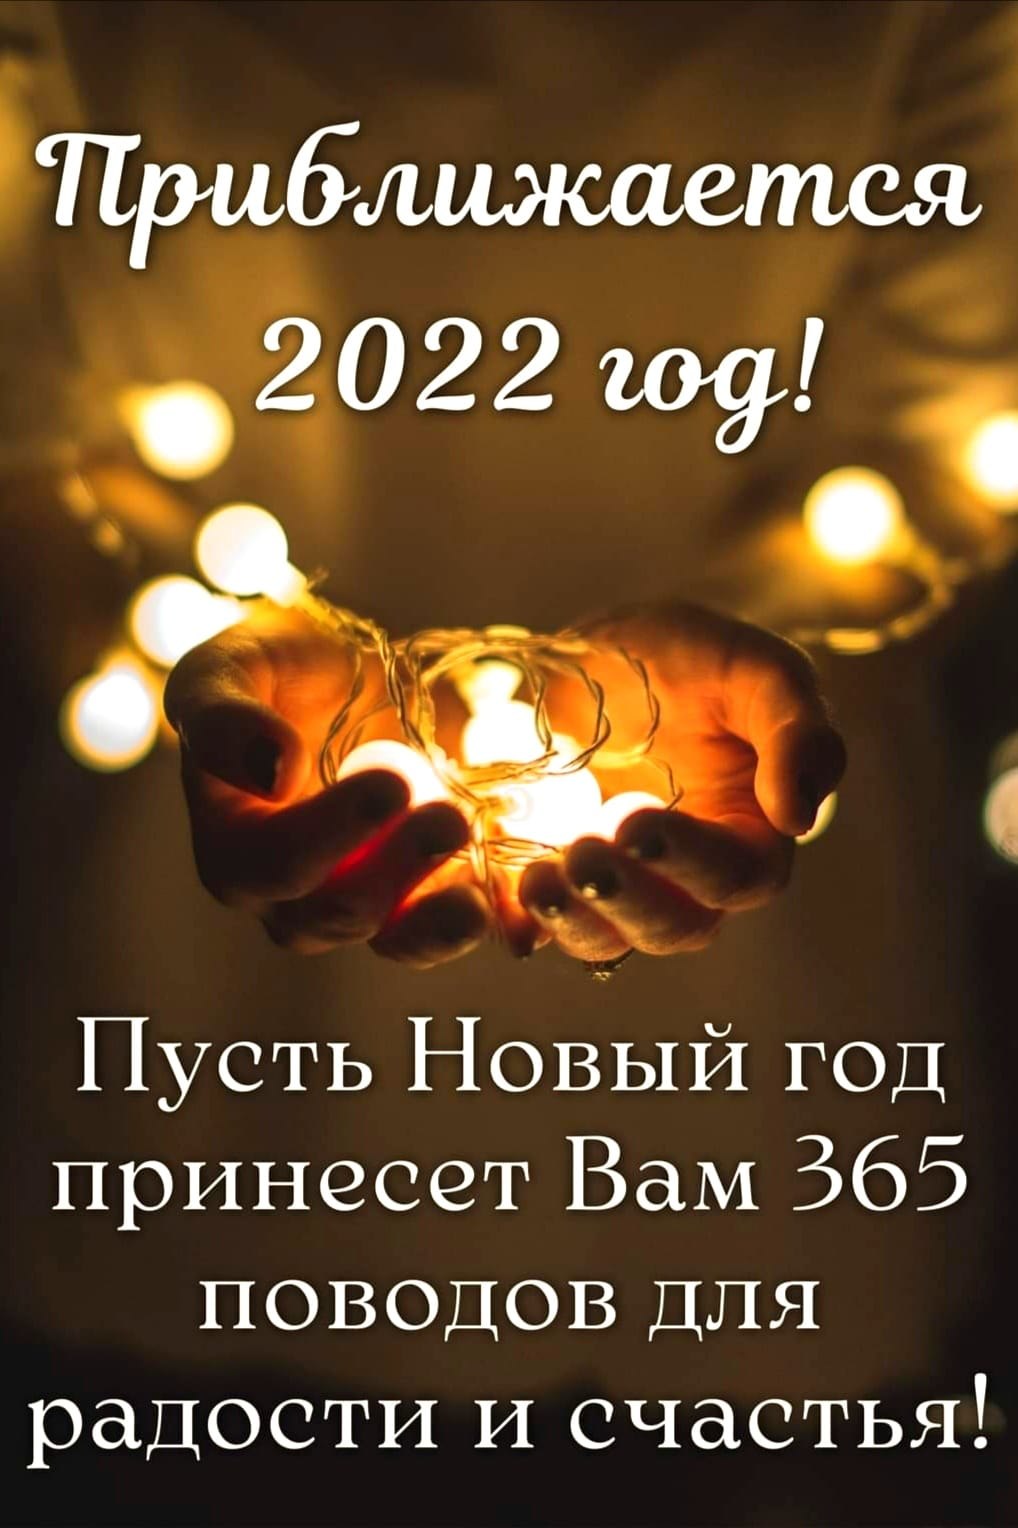  ! - 21  2021  12:33